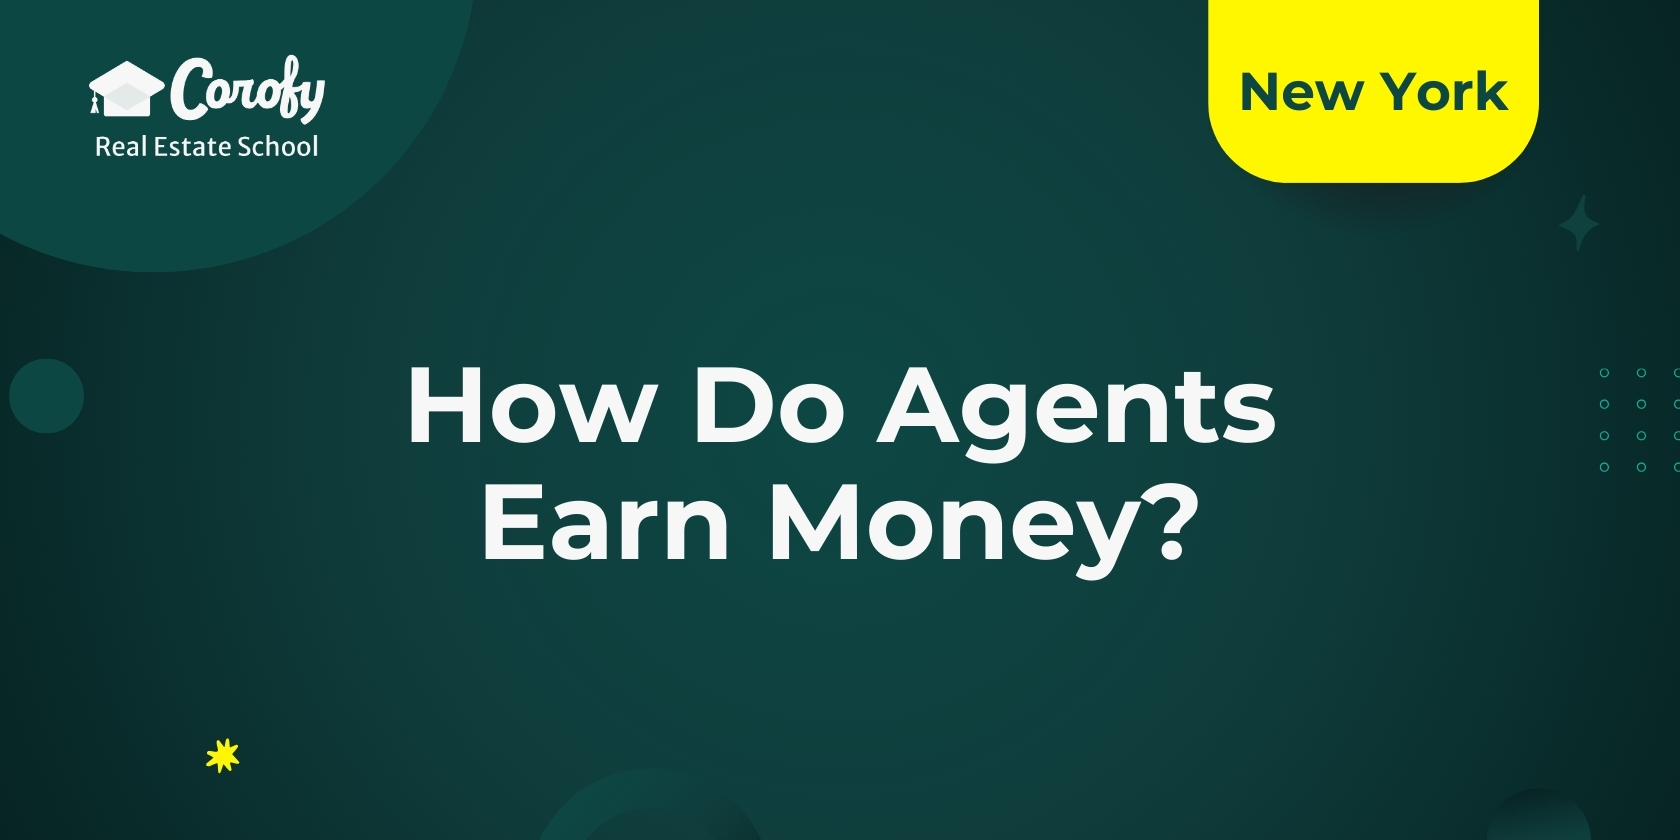 How Do Agents Earn Money?